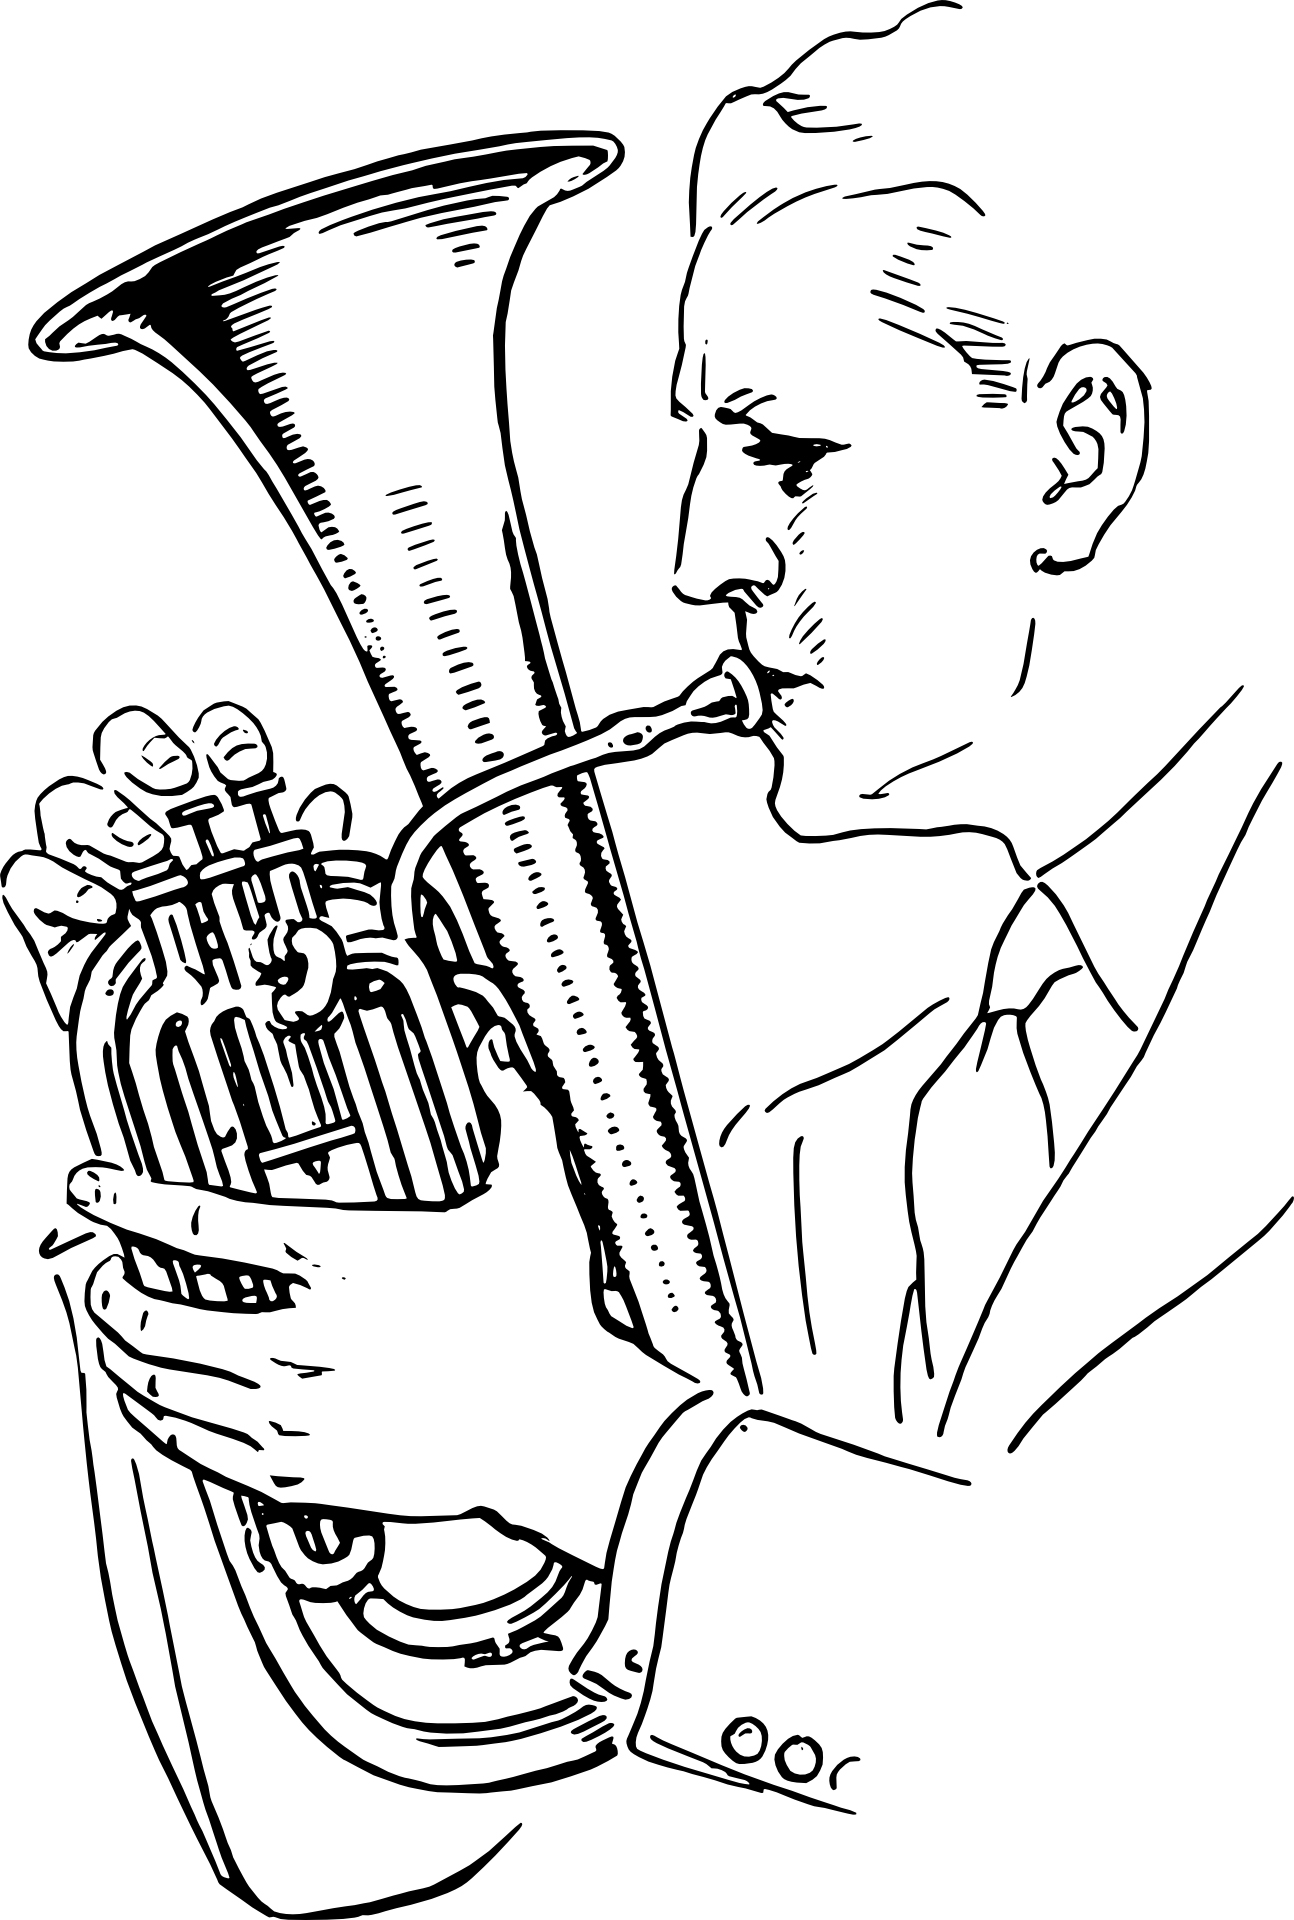 Horn spielen